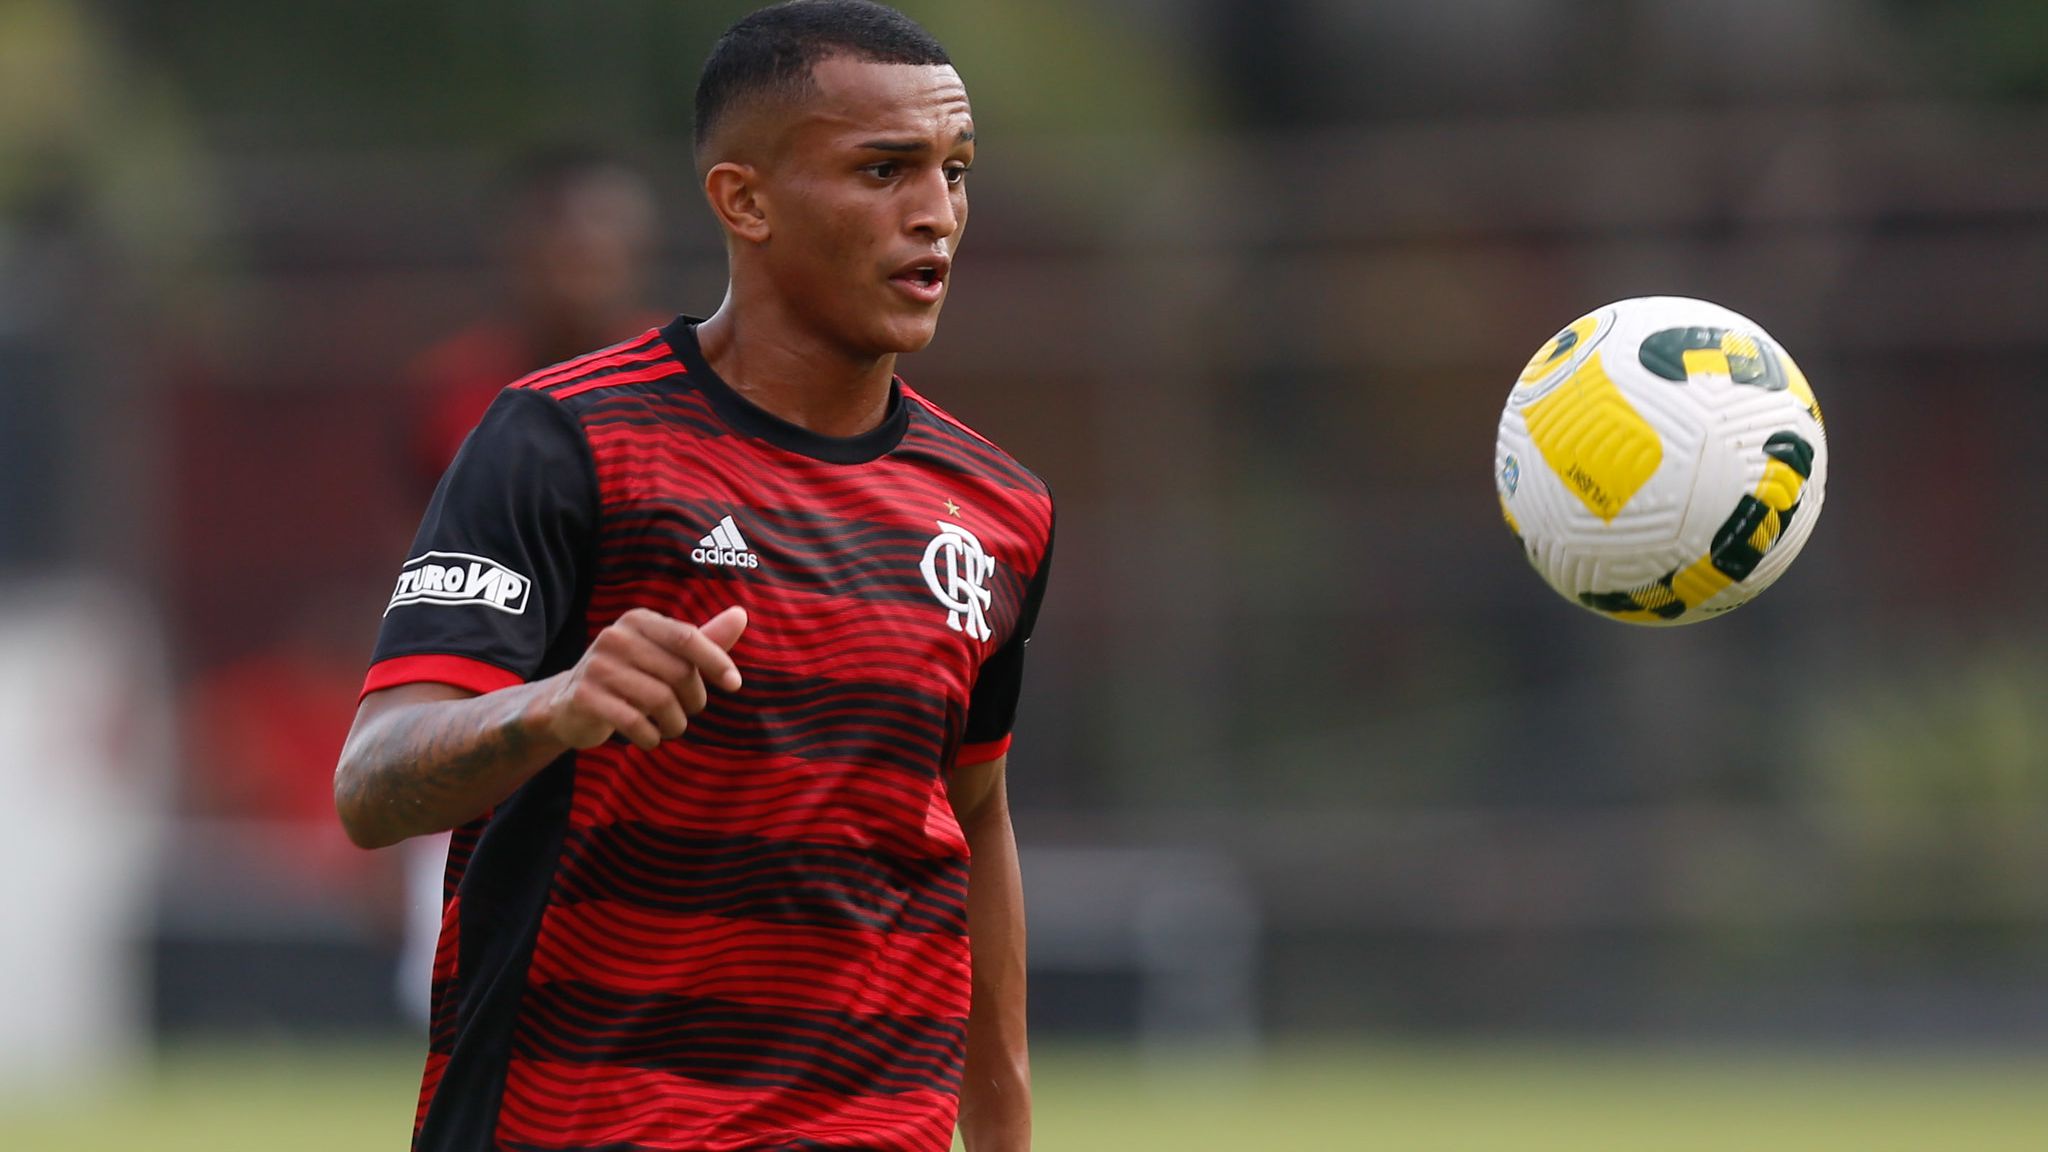 Na mira do Barcelona, Wesley é selecionado pelo Flamengo em pré-lista para  o Mundial de Clubes - Coluna do Fla